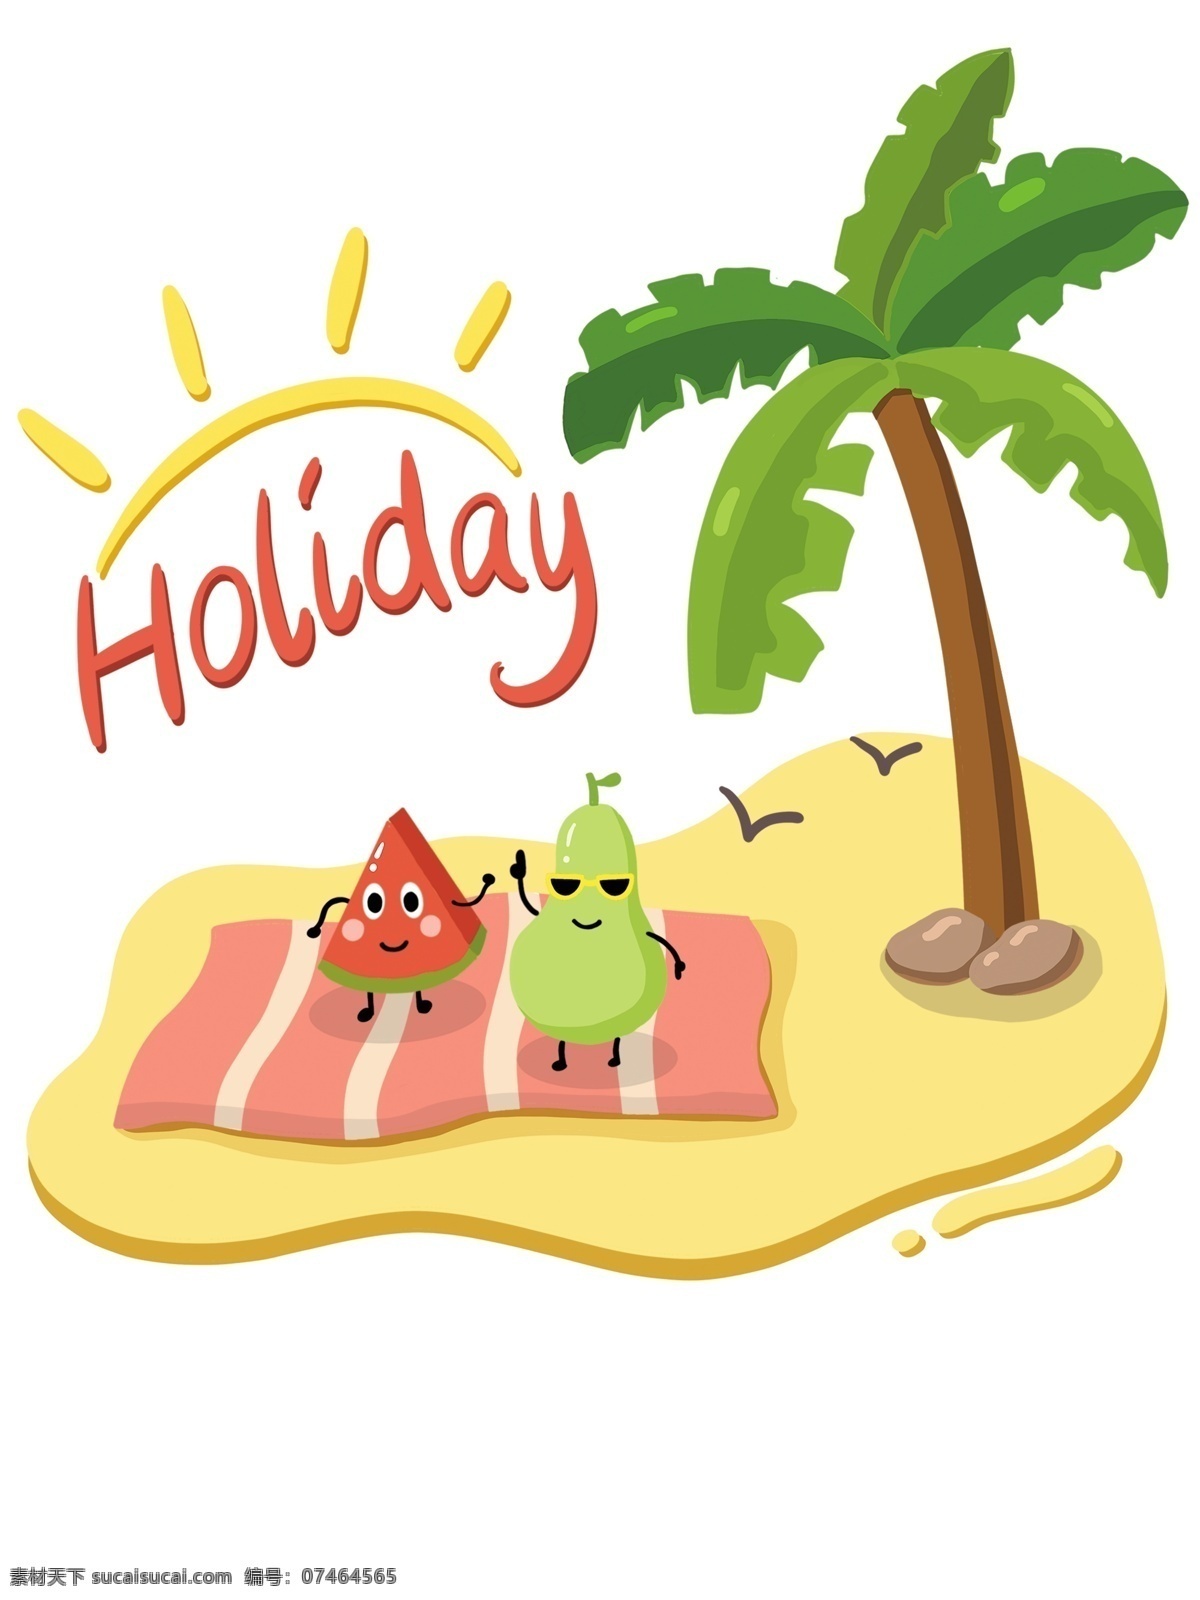 帆布 袋 假期 度假 夏天 椰子树 holiday 西瓜 梨子 跳舞 拟人 假日 海鸥 沙滩 石头 清新